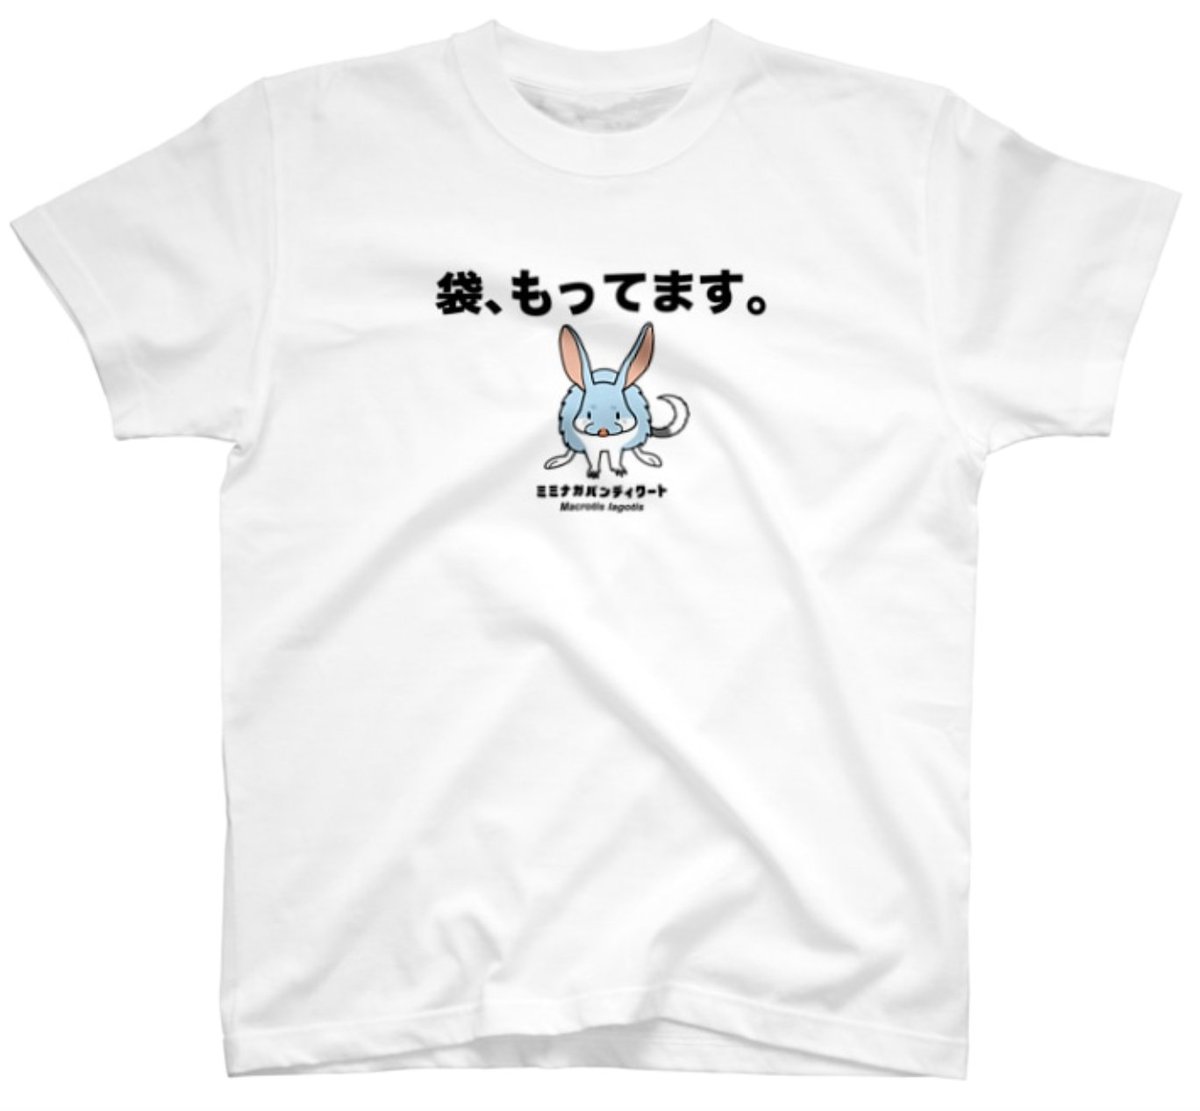 レジでの意思表示に使える(?)、有袋宣言Tシャツを作りました。Tシャツ1,000円OFFセールは明日8月11日まで。 

https://t.co/ABKA5Gjme1 